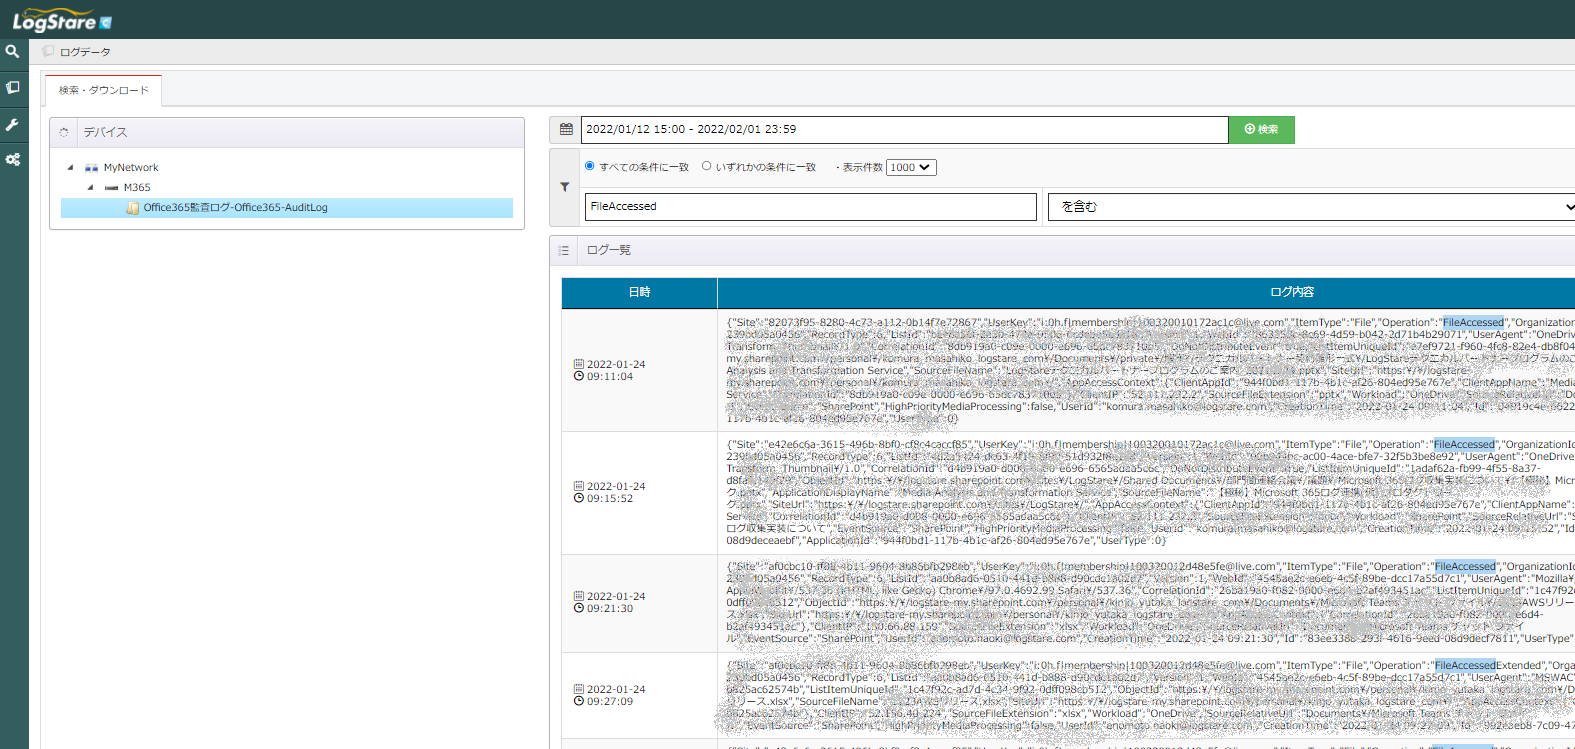 LogStare Collector でM365 監査ログの中でファイルアクセスログを検索している様子